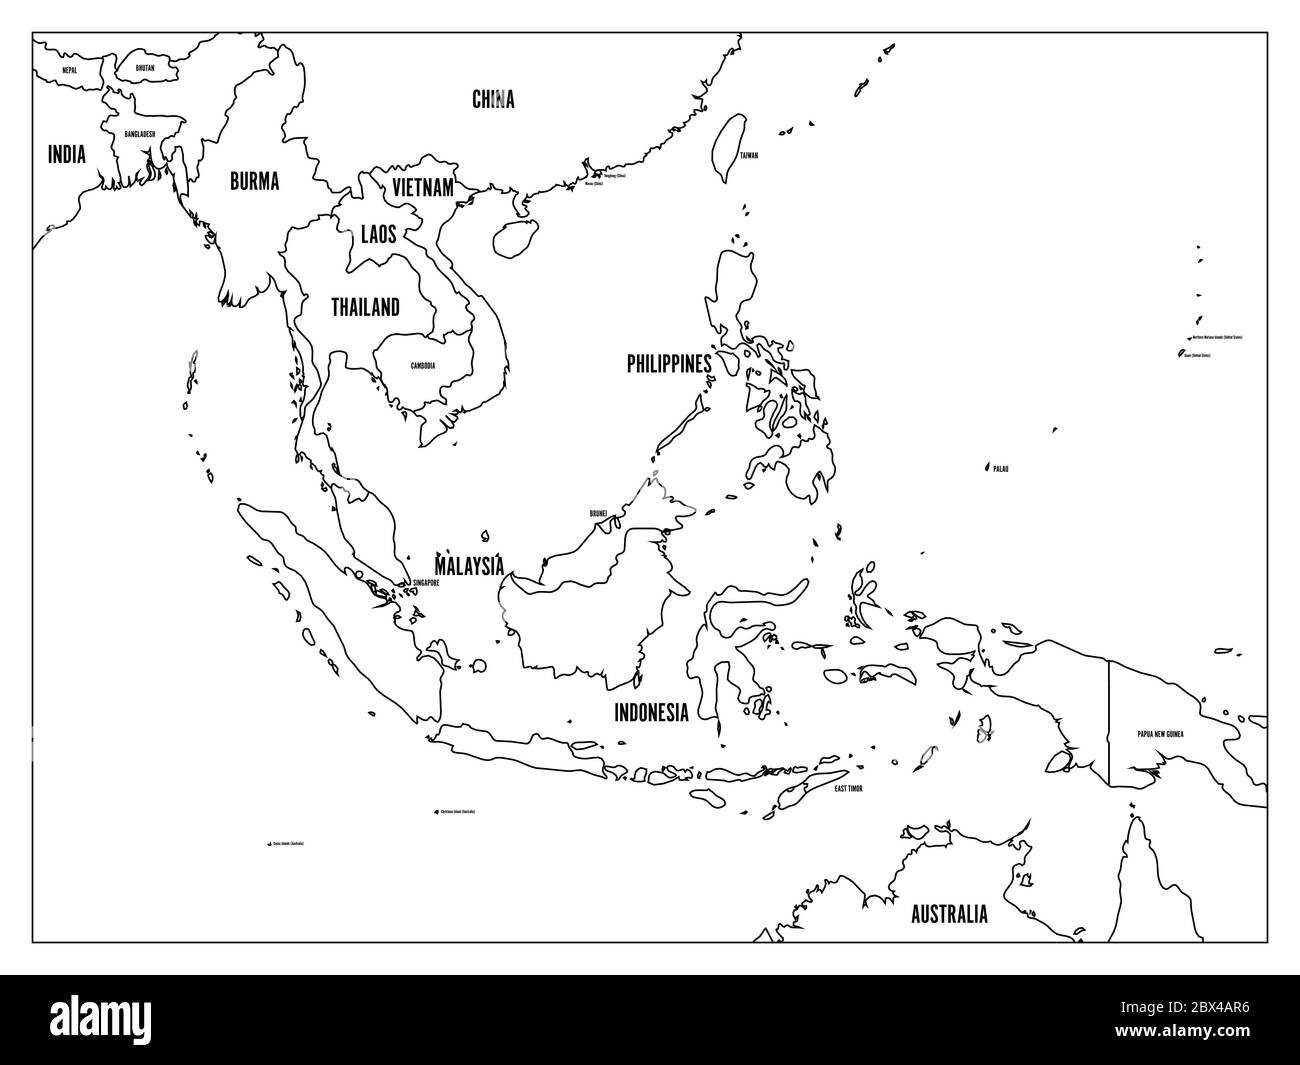 Mappa politica del Sud-Est asiatico. Contorno nero su sfondo bianco con etichette nere per il nome del paese. Semplice illustrazione vettoriale piatta. Illustrazione Vettoriale